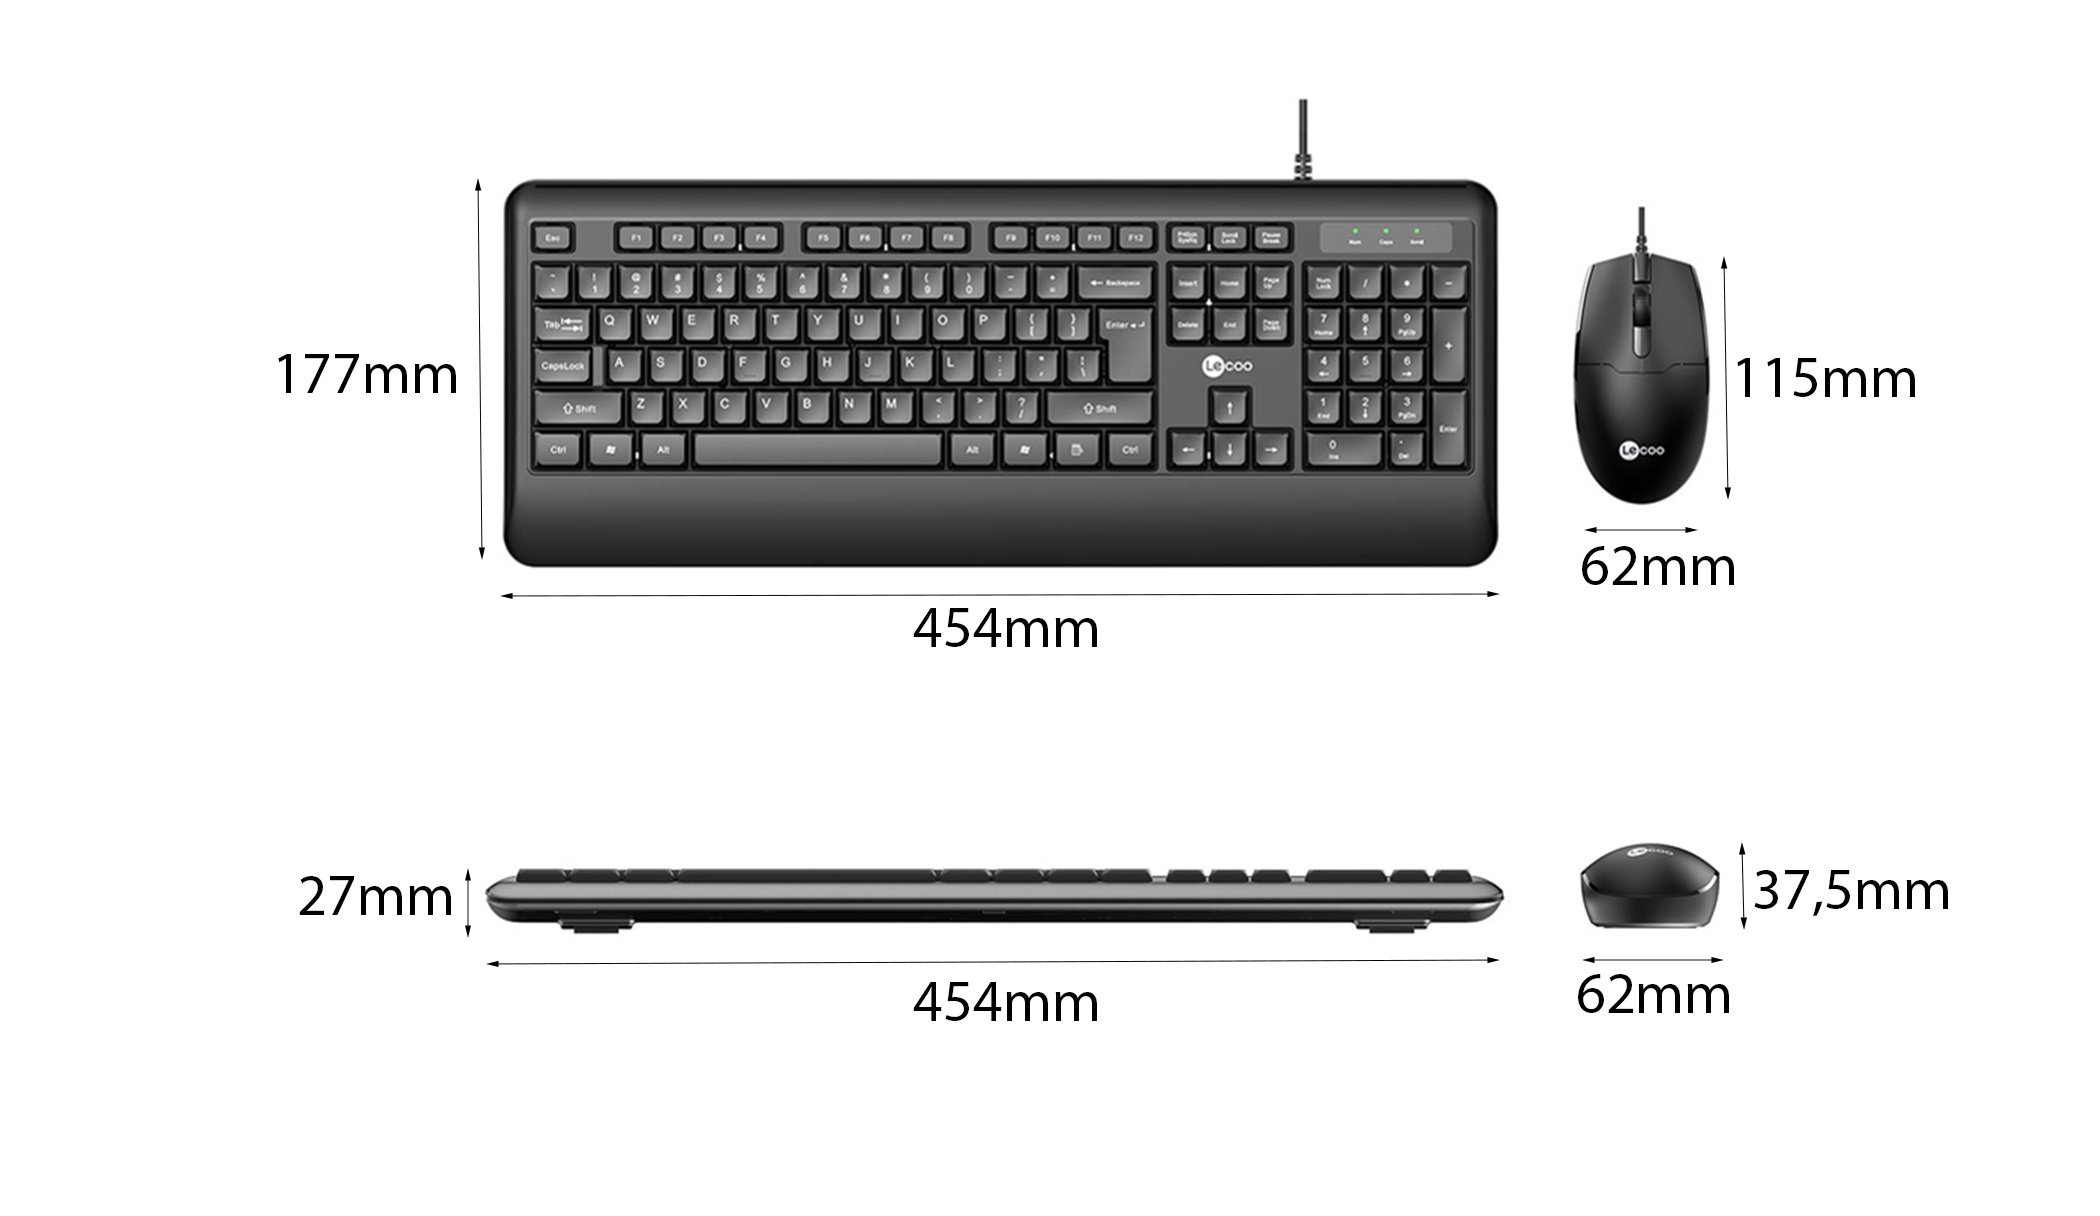 Bàn phím trong bộ bàn phím chuột văn phòng Lecoo CM104 là một thành phần quan trọng, đóng vai trò chính trong việc nhập liệu và tương tác với máy tính.